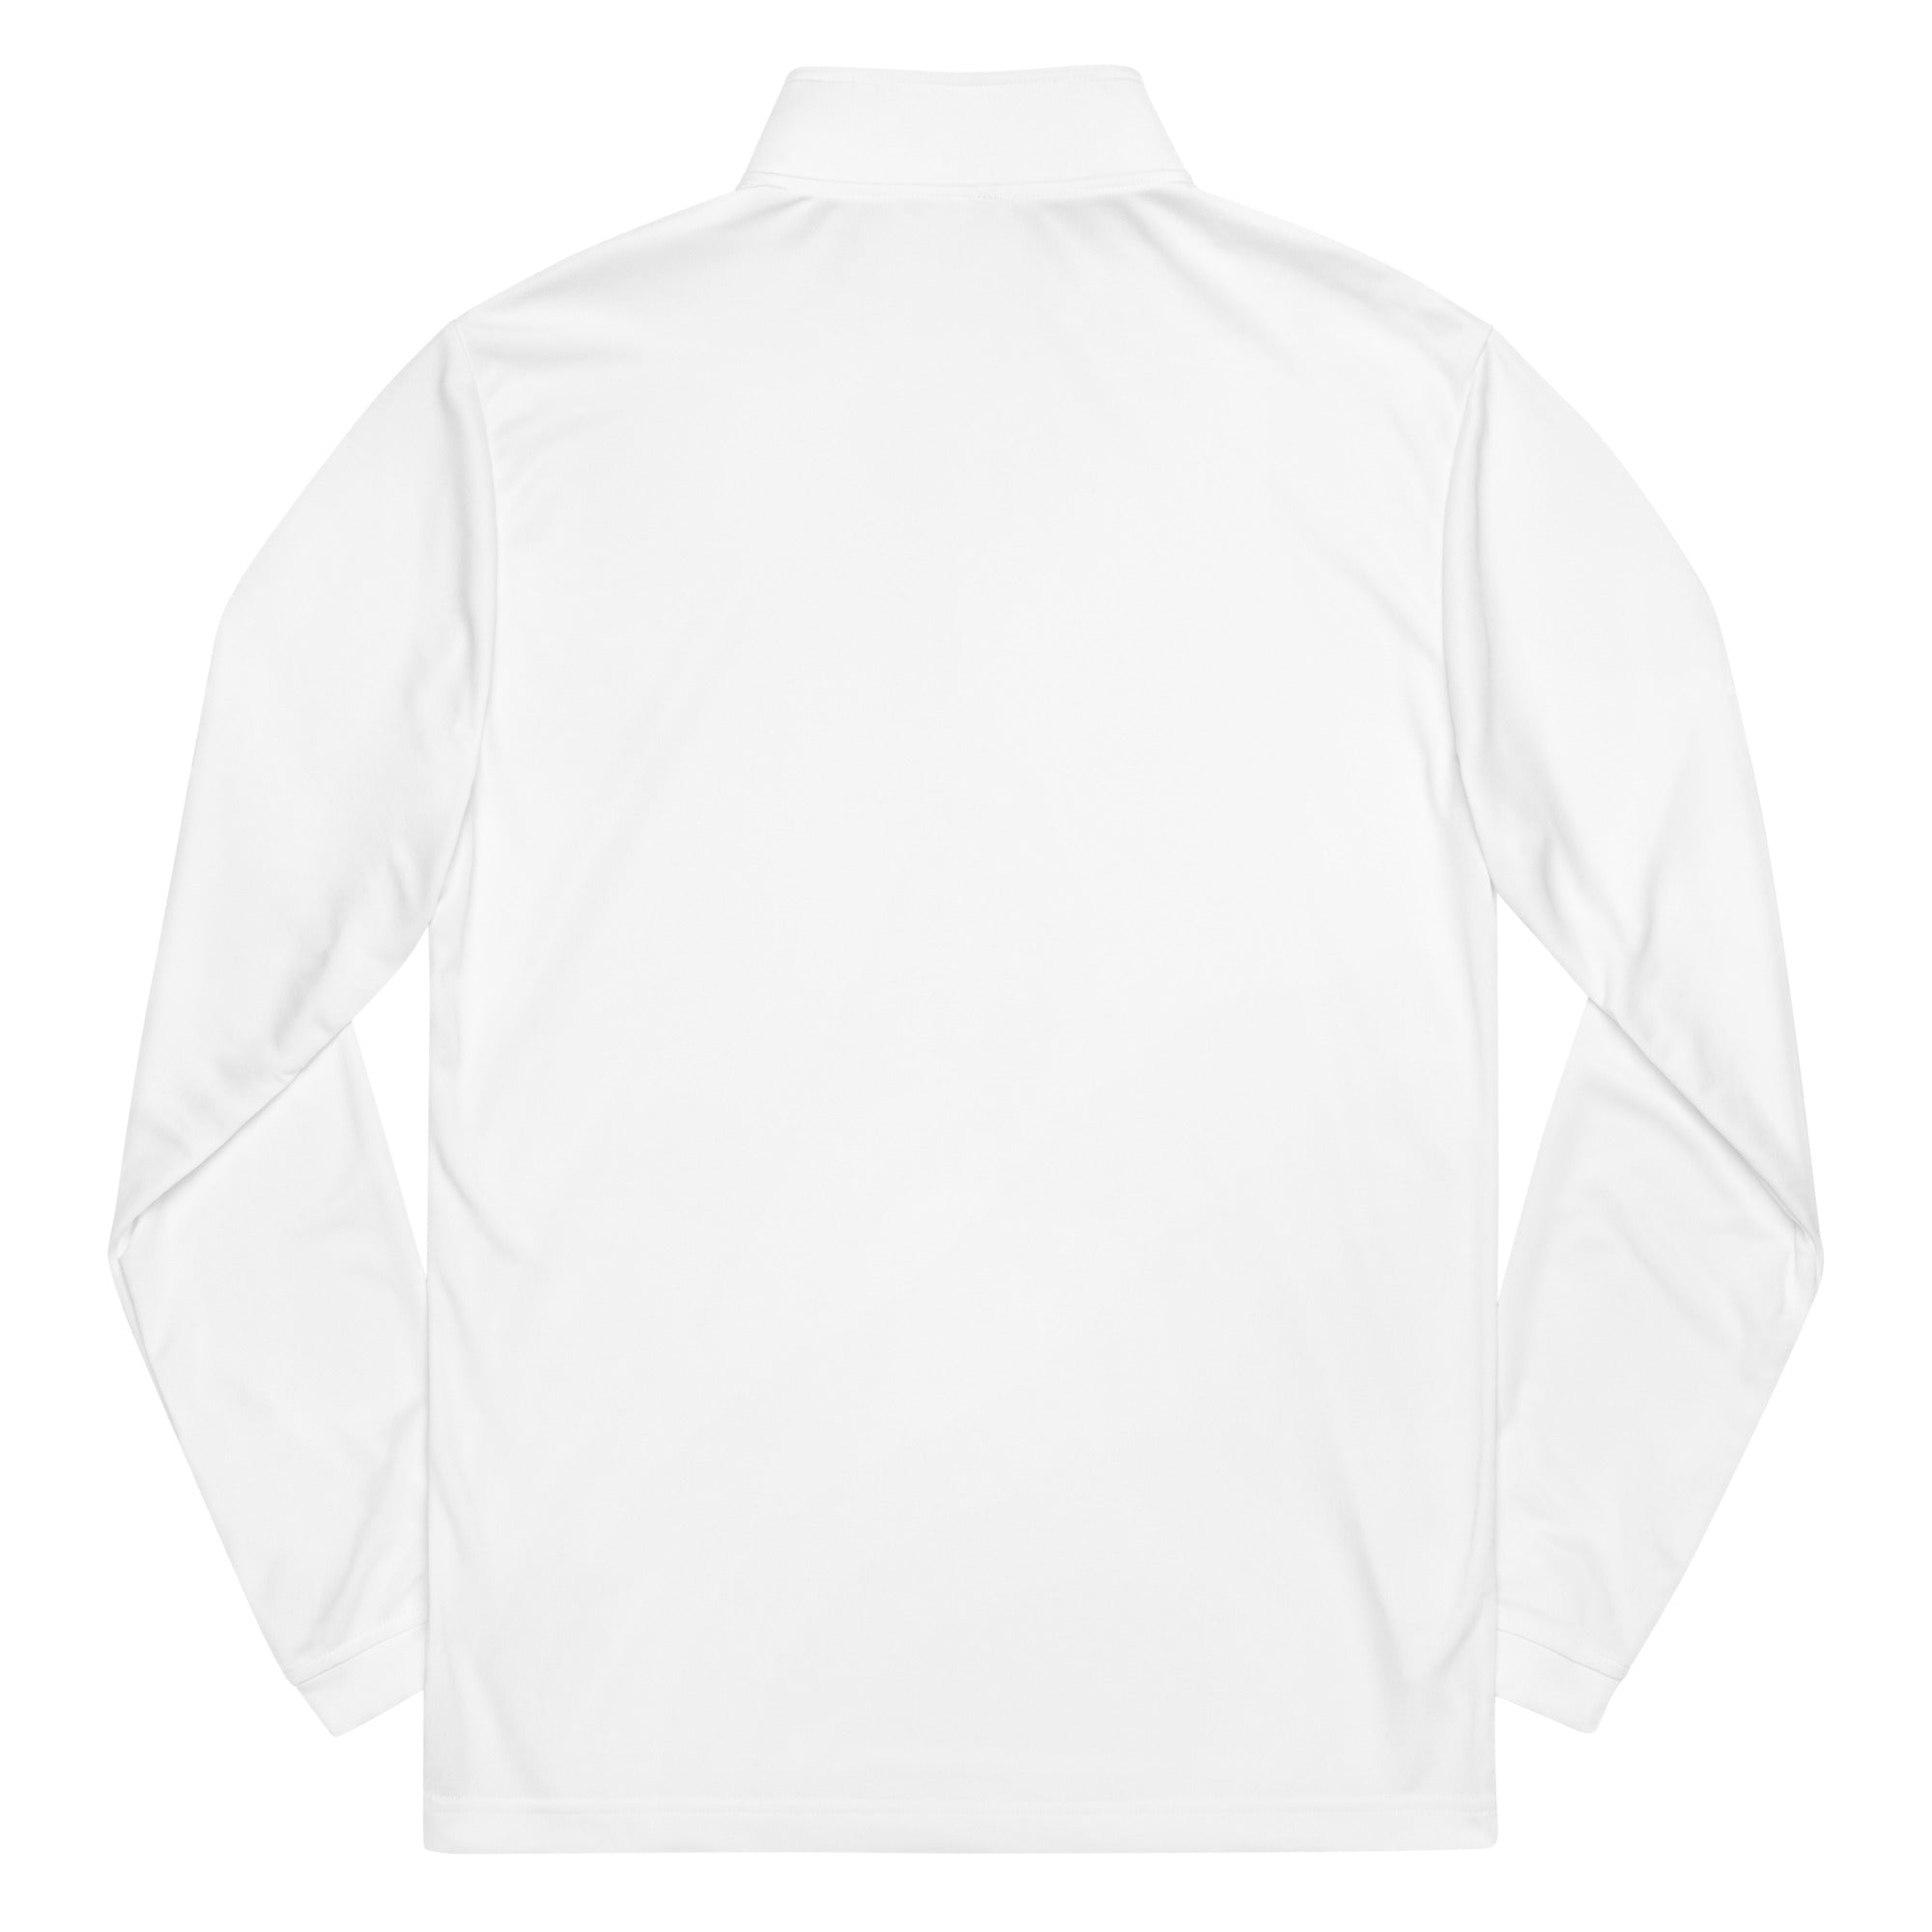 ARK Adidas White Quarter zip pullover